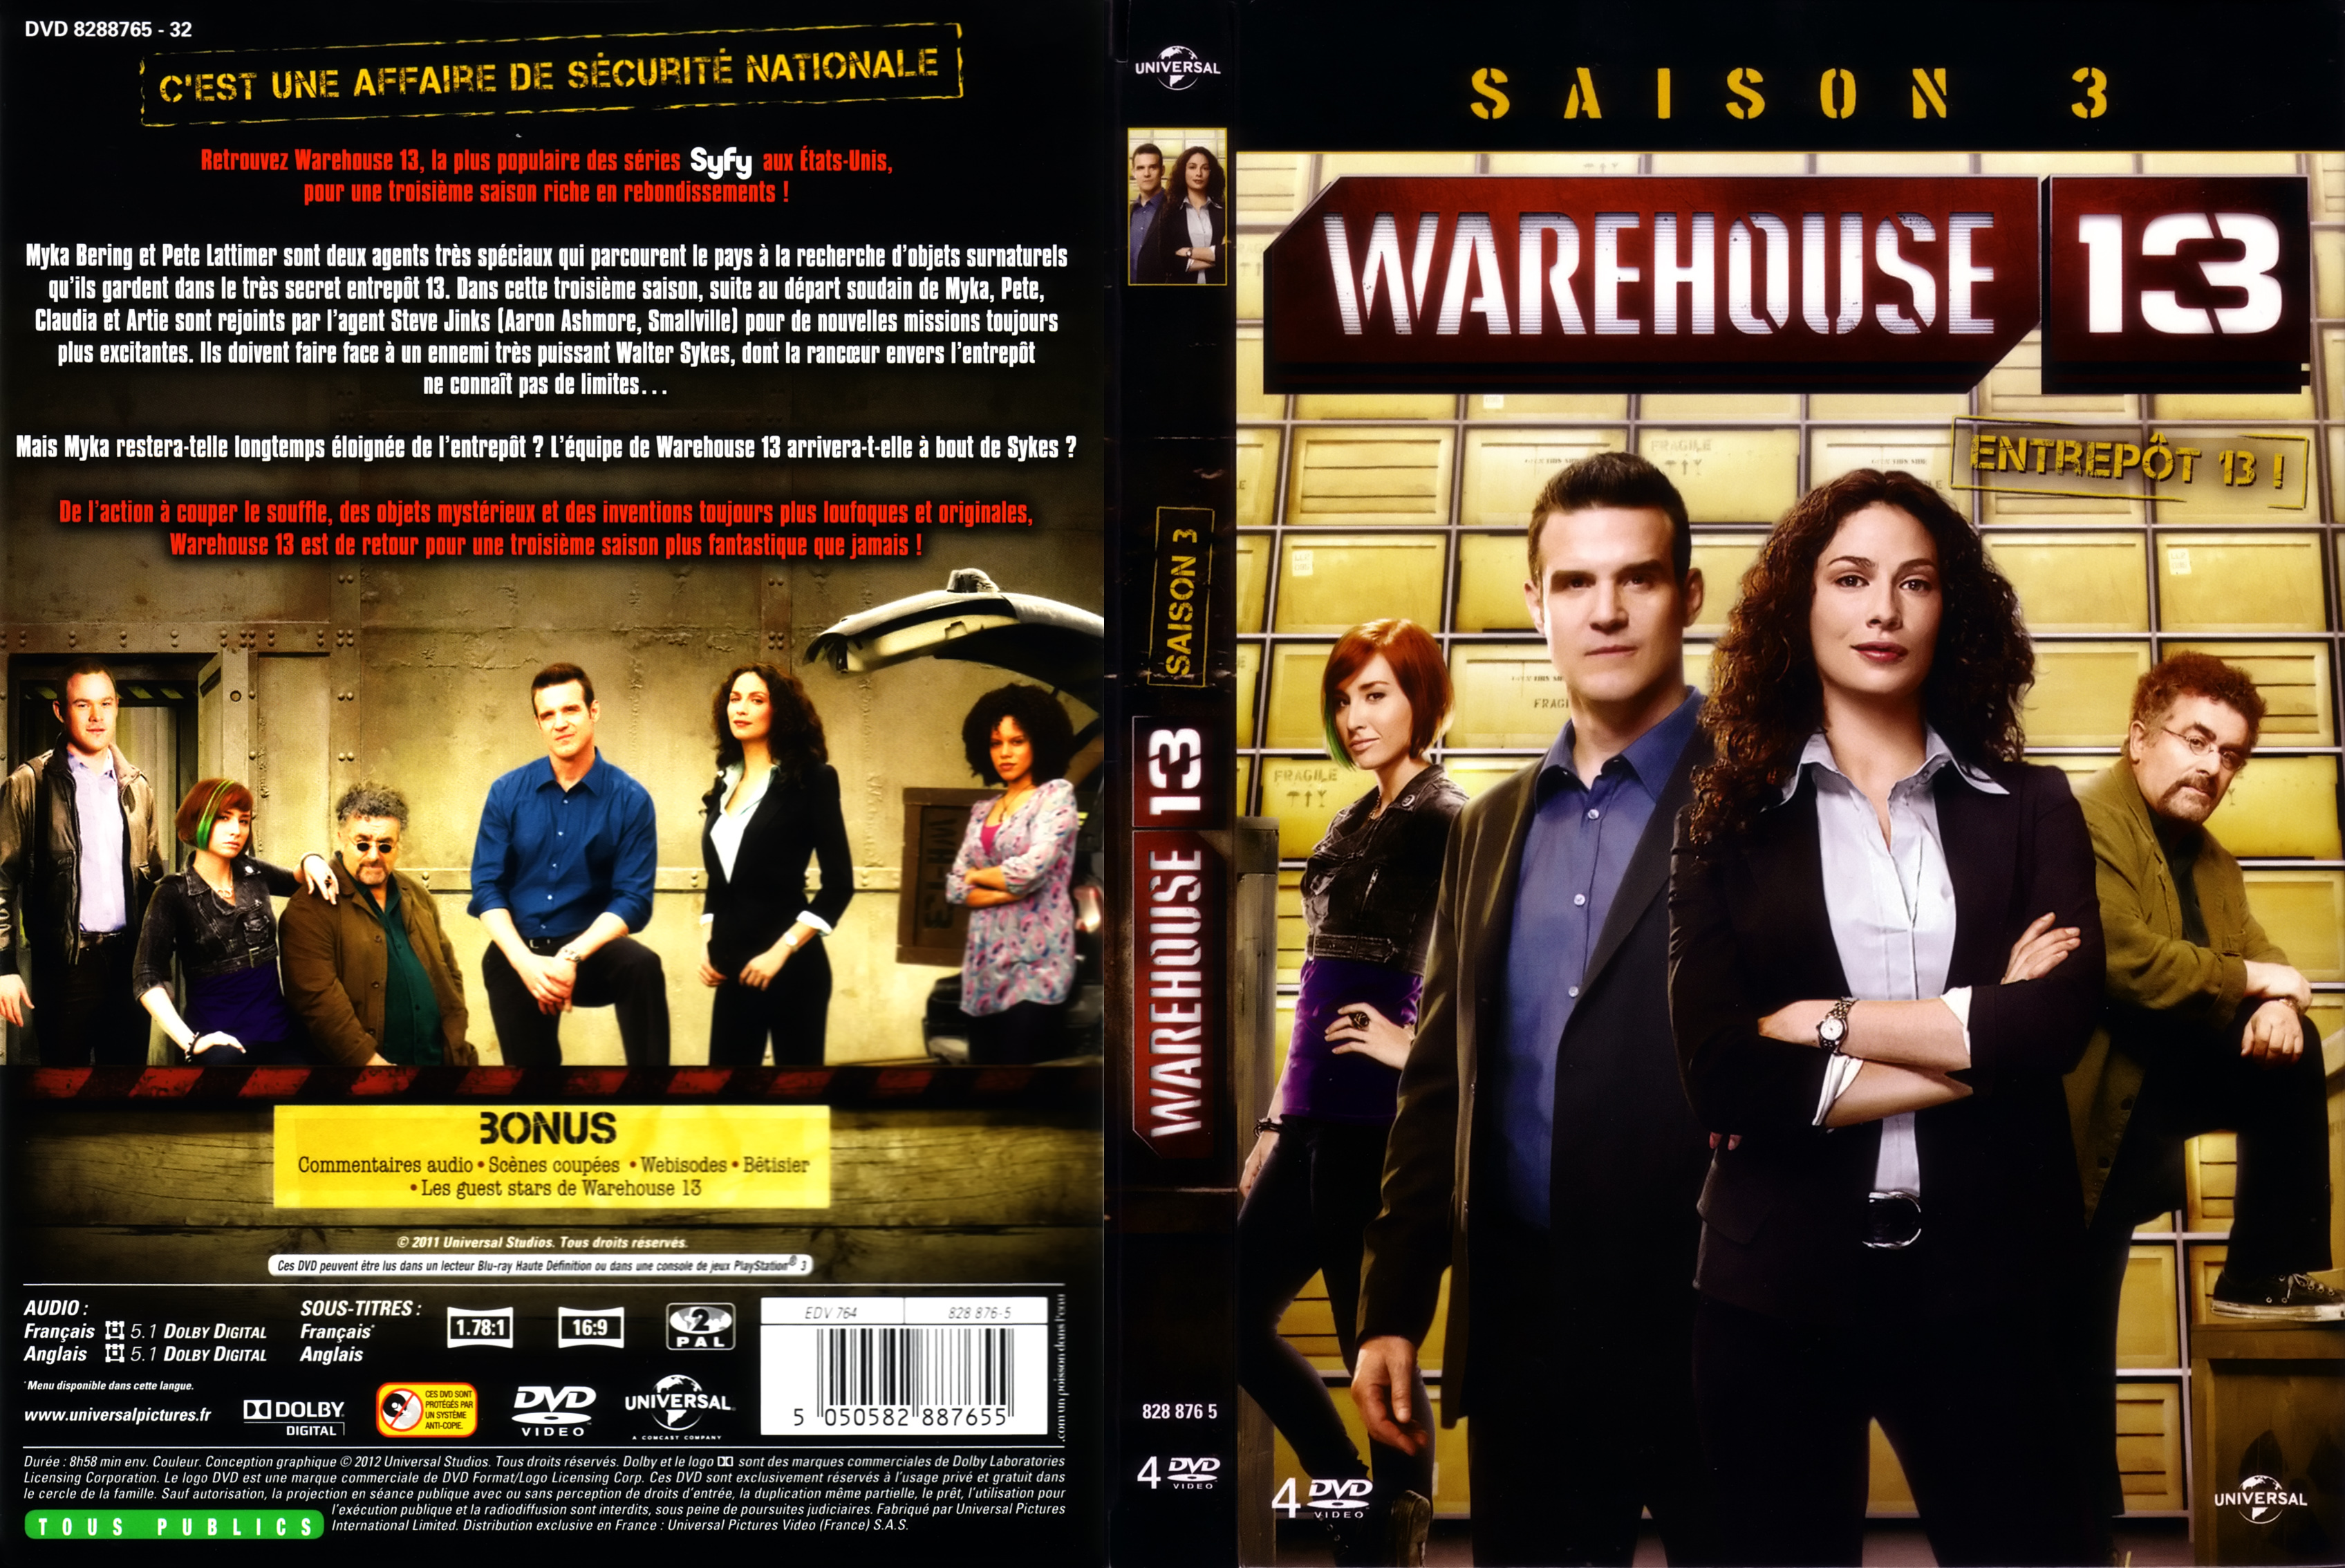 Jaquette DVD Warehouse 13 Saison 3 COFFRET.